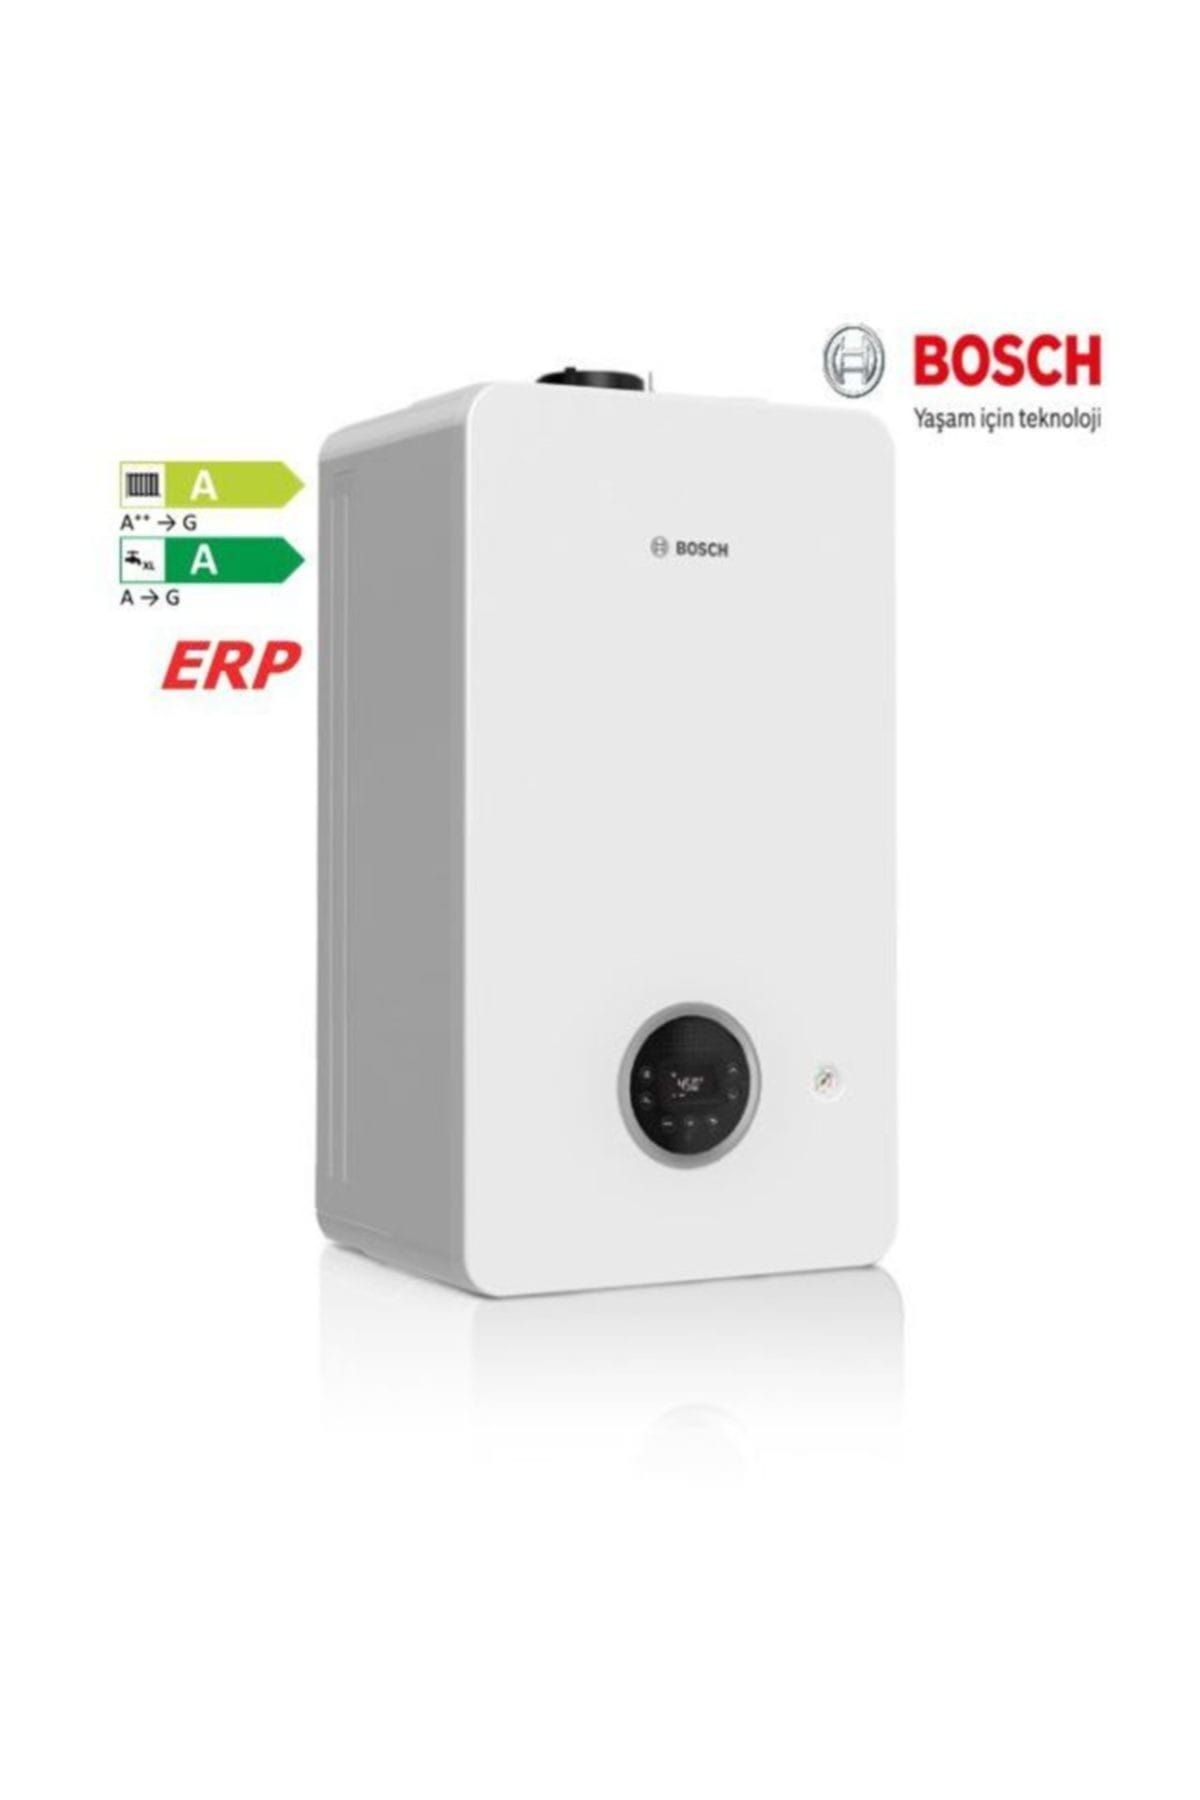 Bosch CONDENS 2300i-W 24/28 C23 ERP 20.726 kcal/h Yogusmali